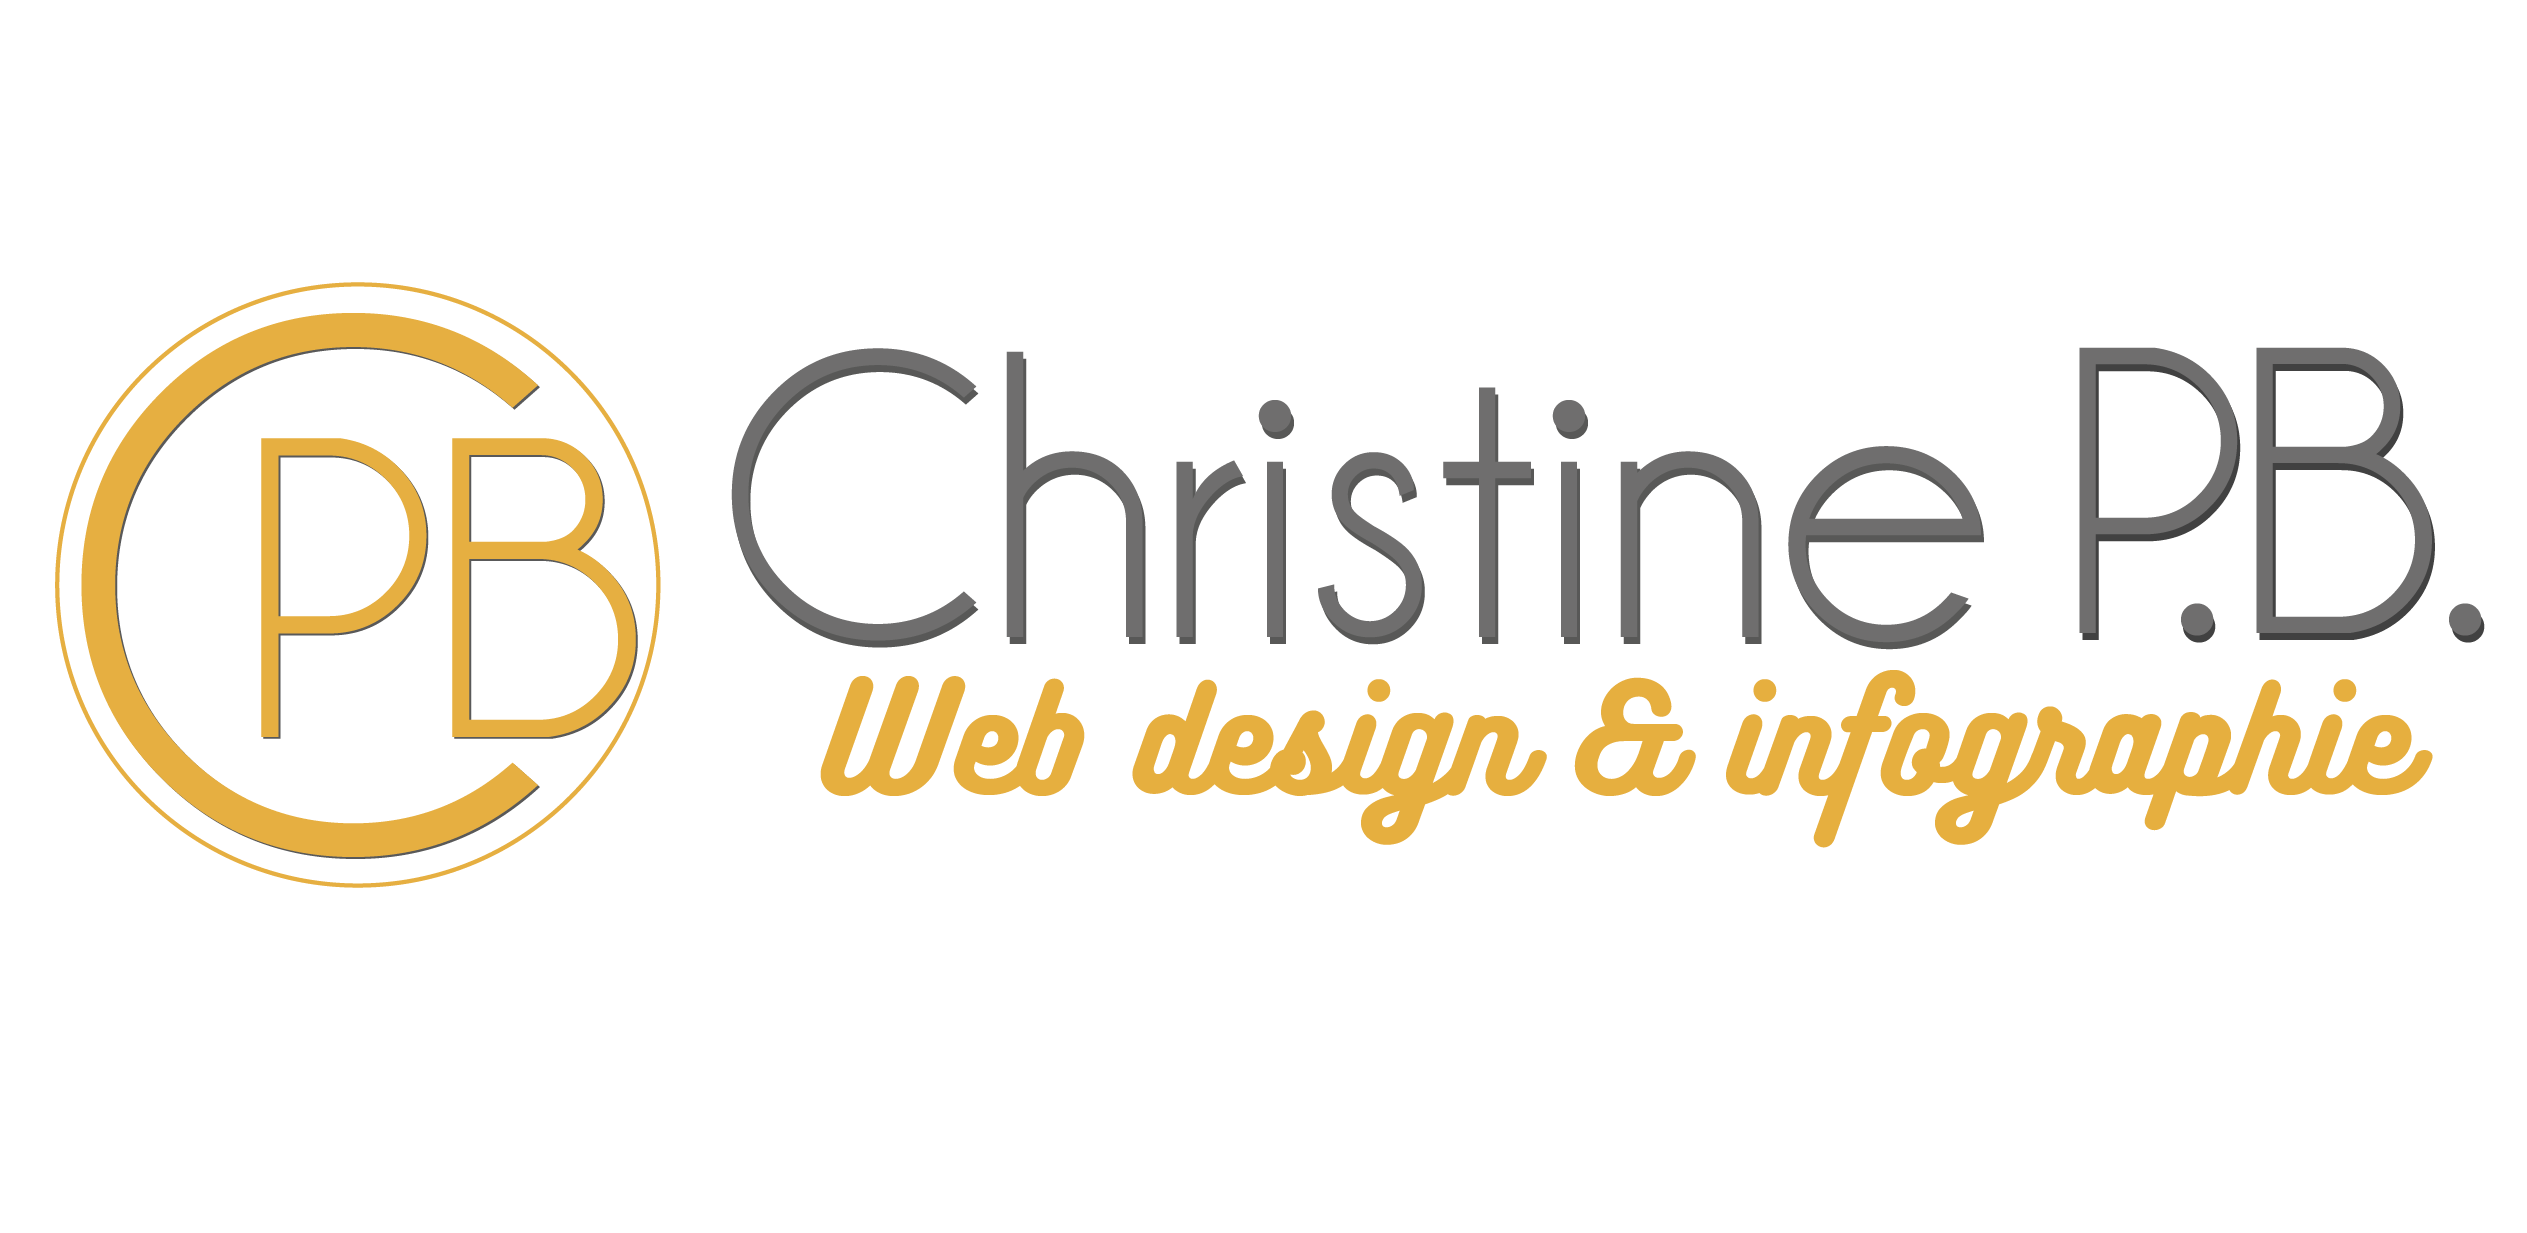 Cette image représente le logo de Christine PB web design et infographie